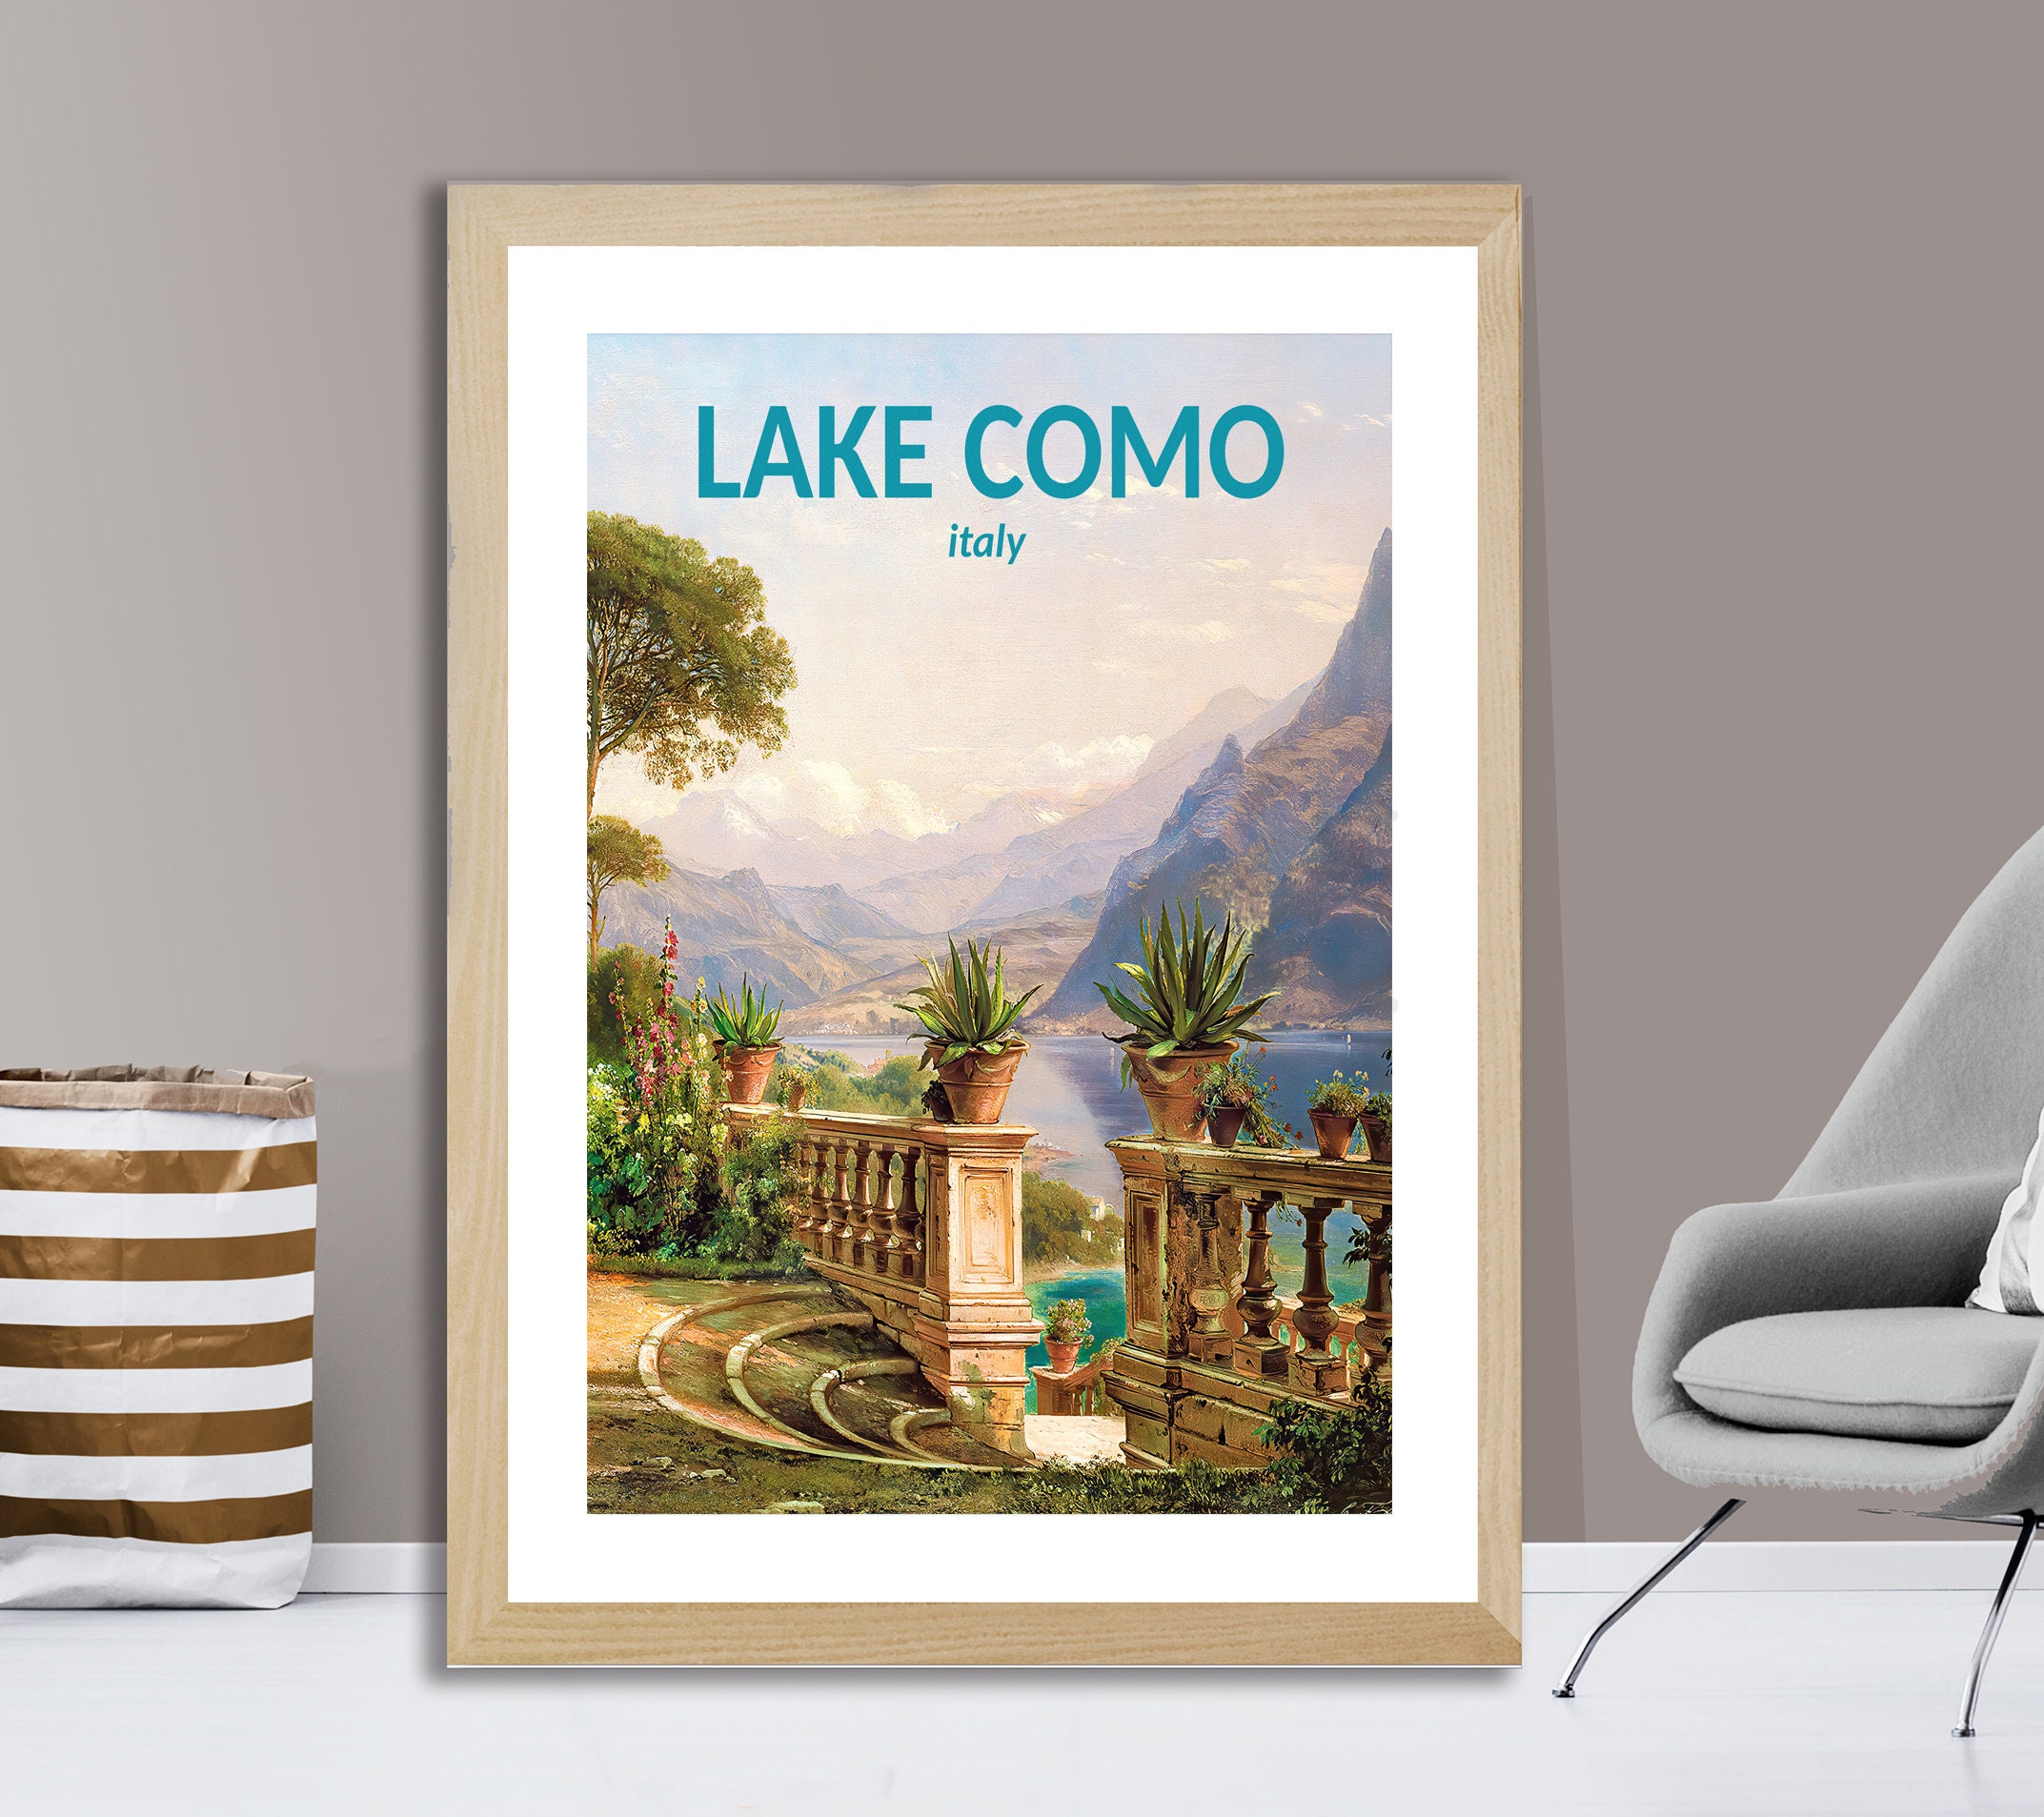 Lake Como Woven Bag - Large